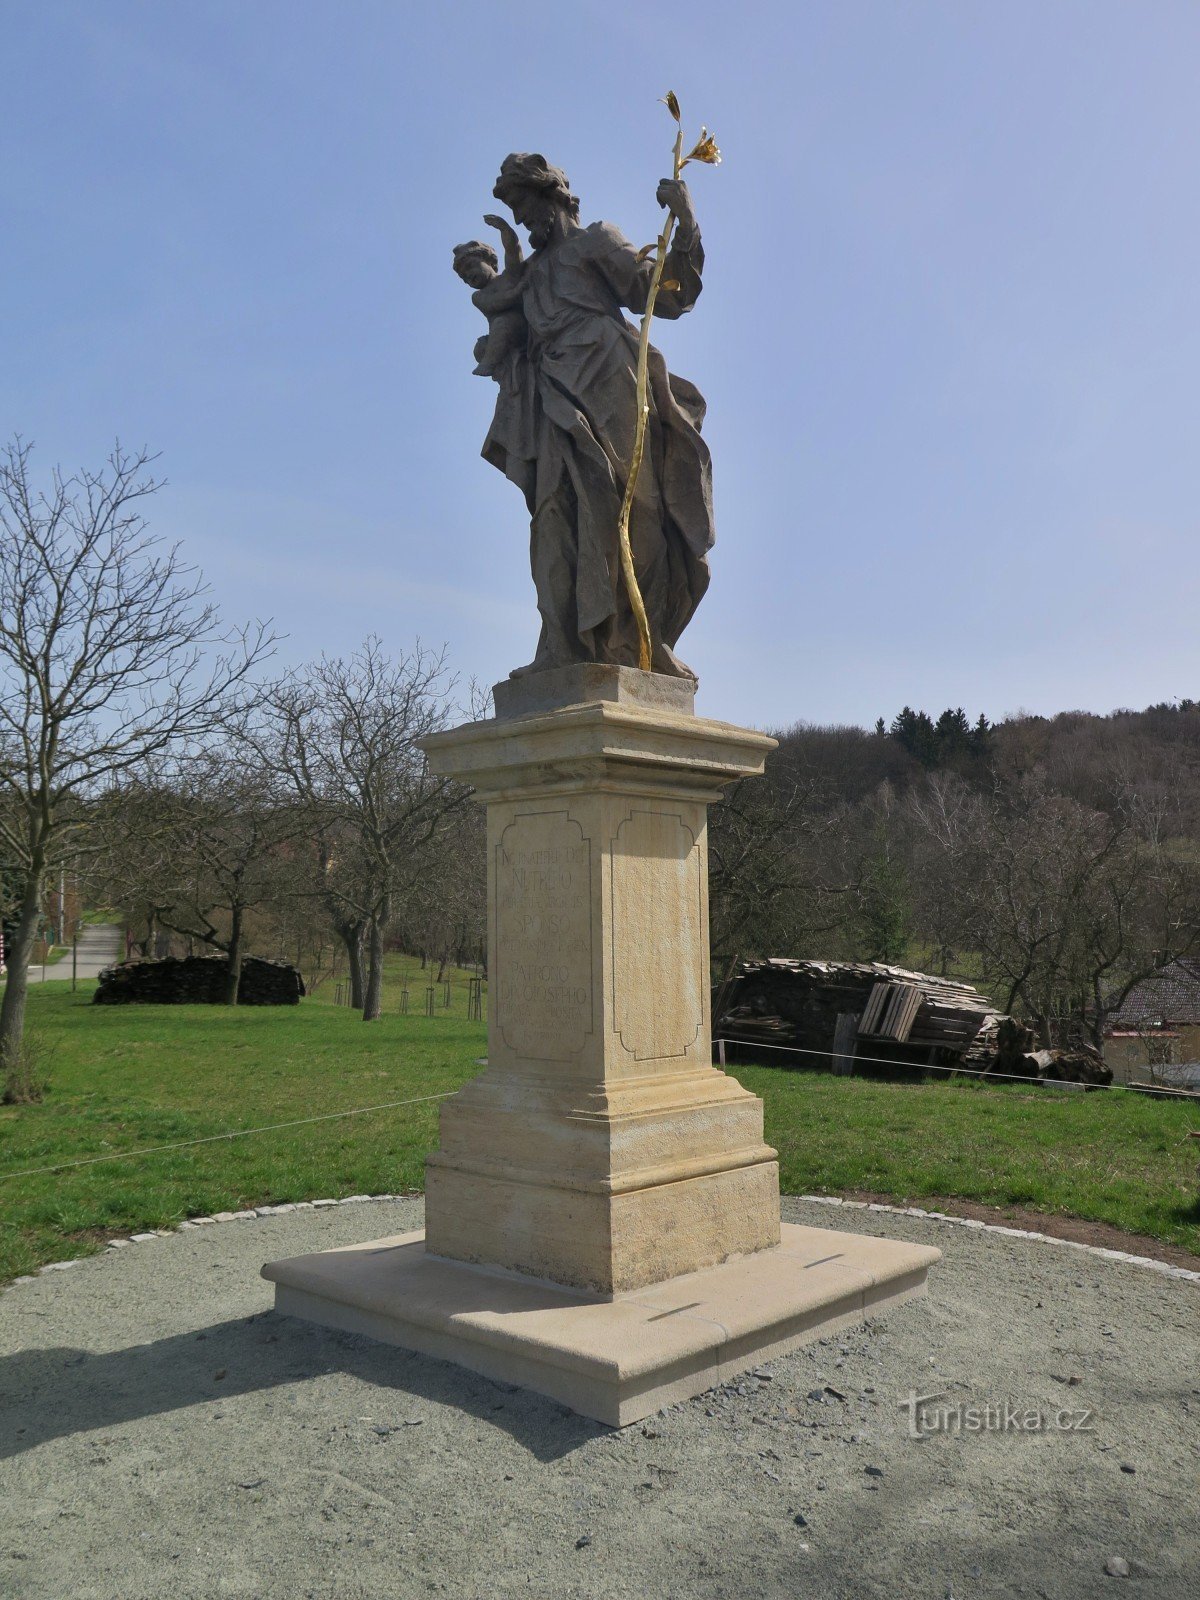 Knínice (lähellä Boskovicea) - Pyhän Tapanin patsas Joseph